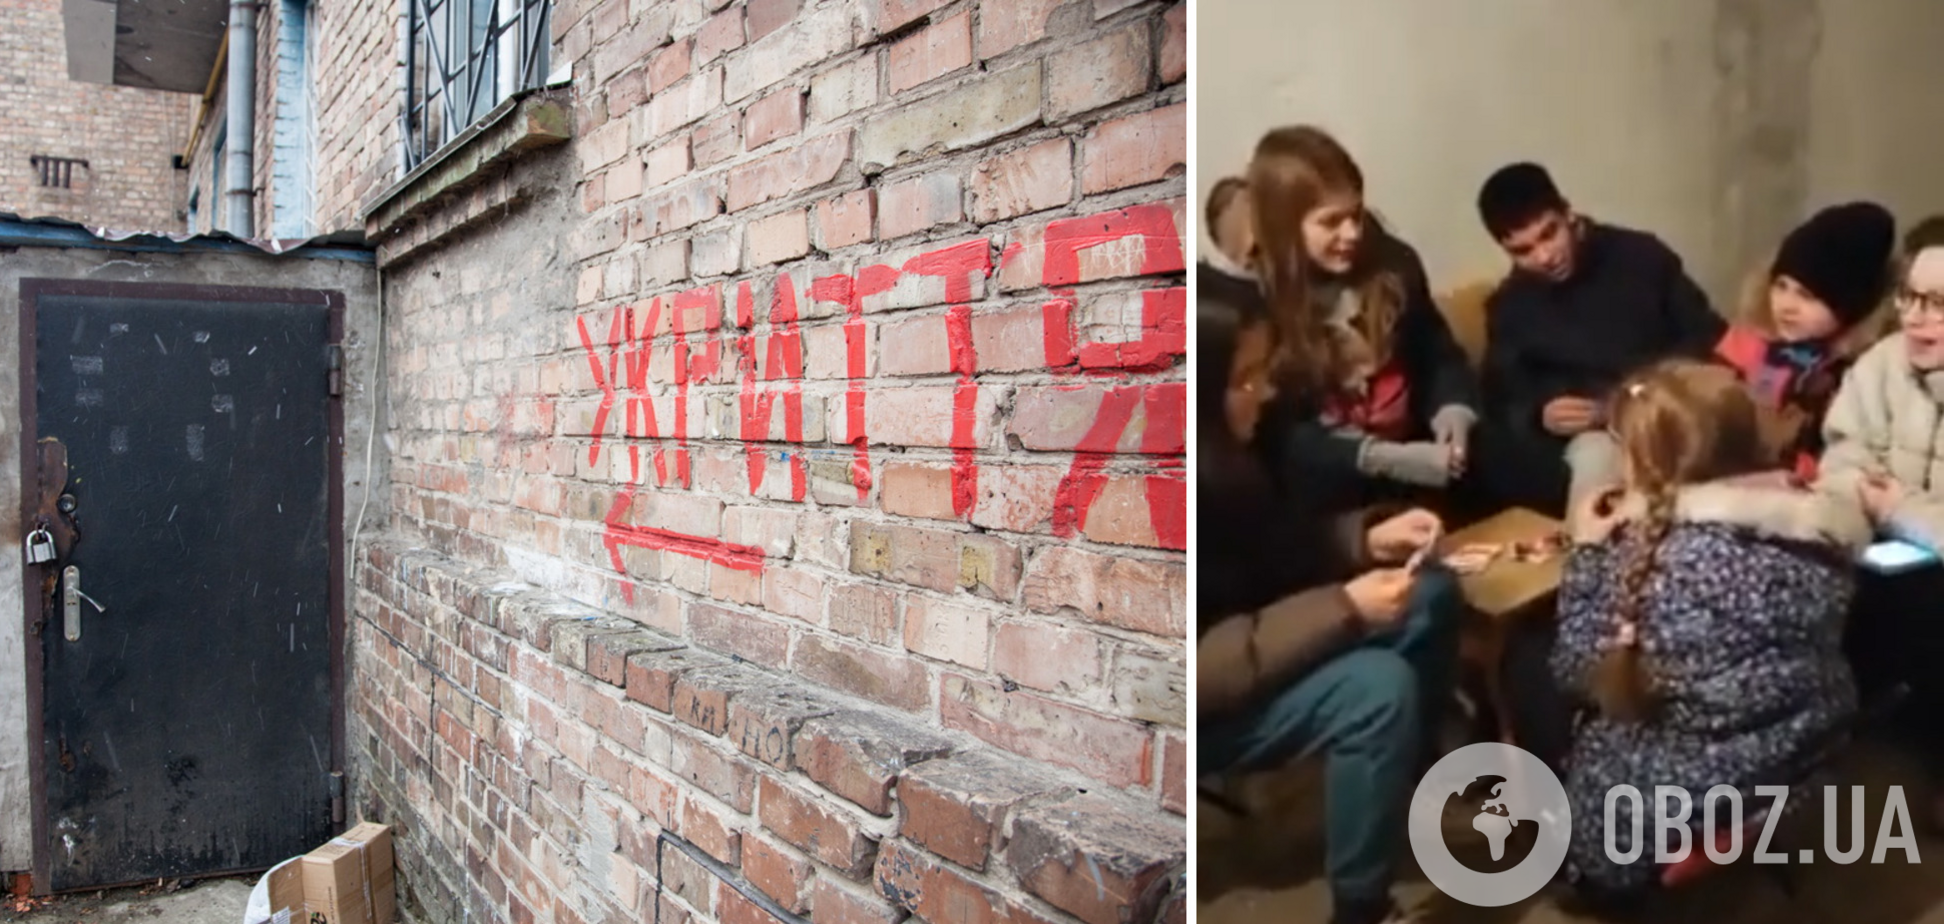 'Як тебе не любити, Києве мій': дети в столичном бомбоубежище исполнили трогательную песню. Видео